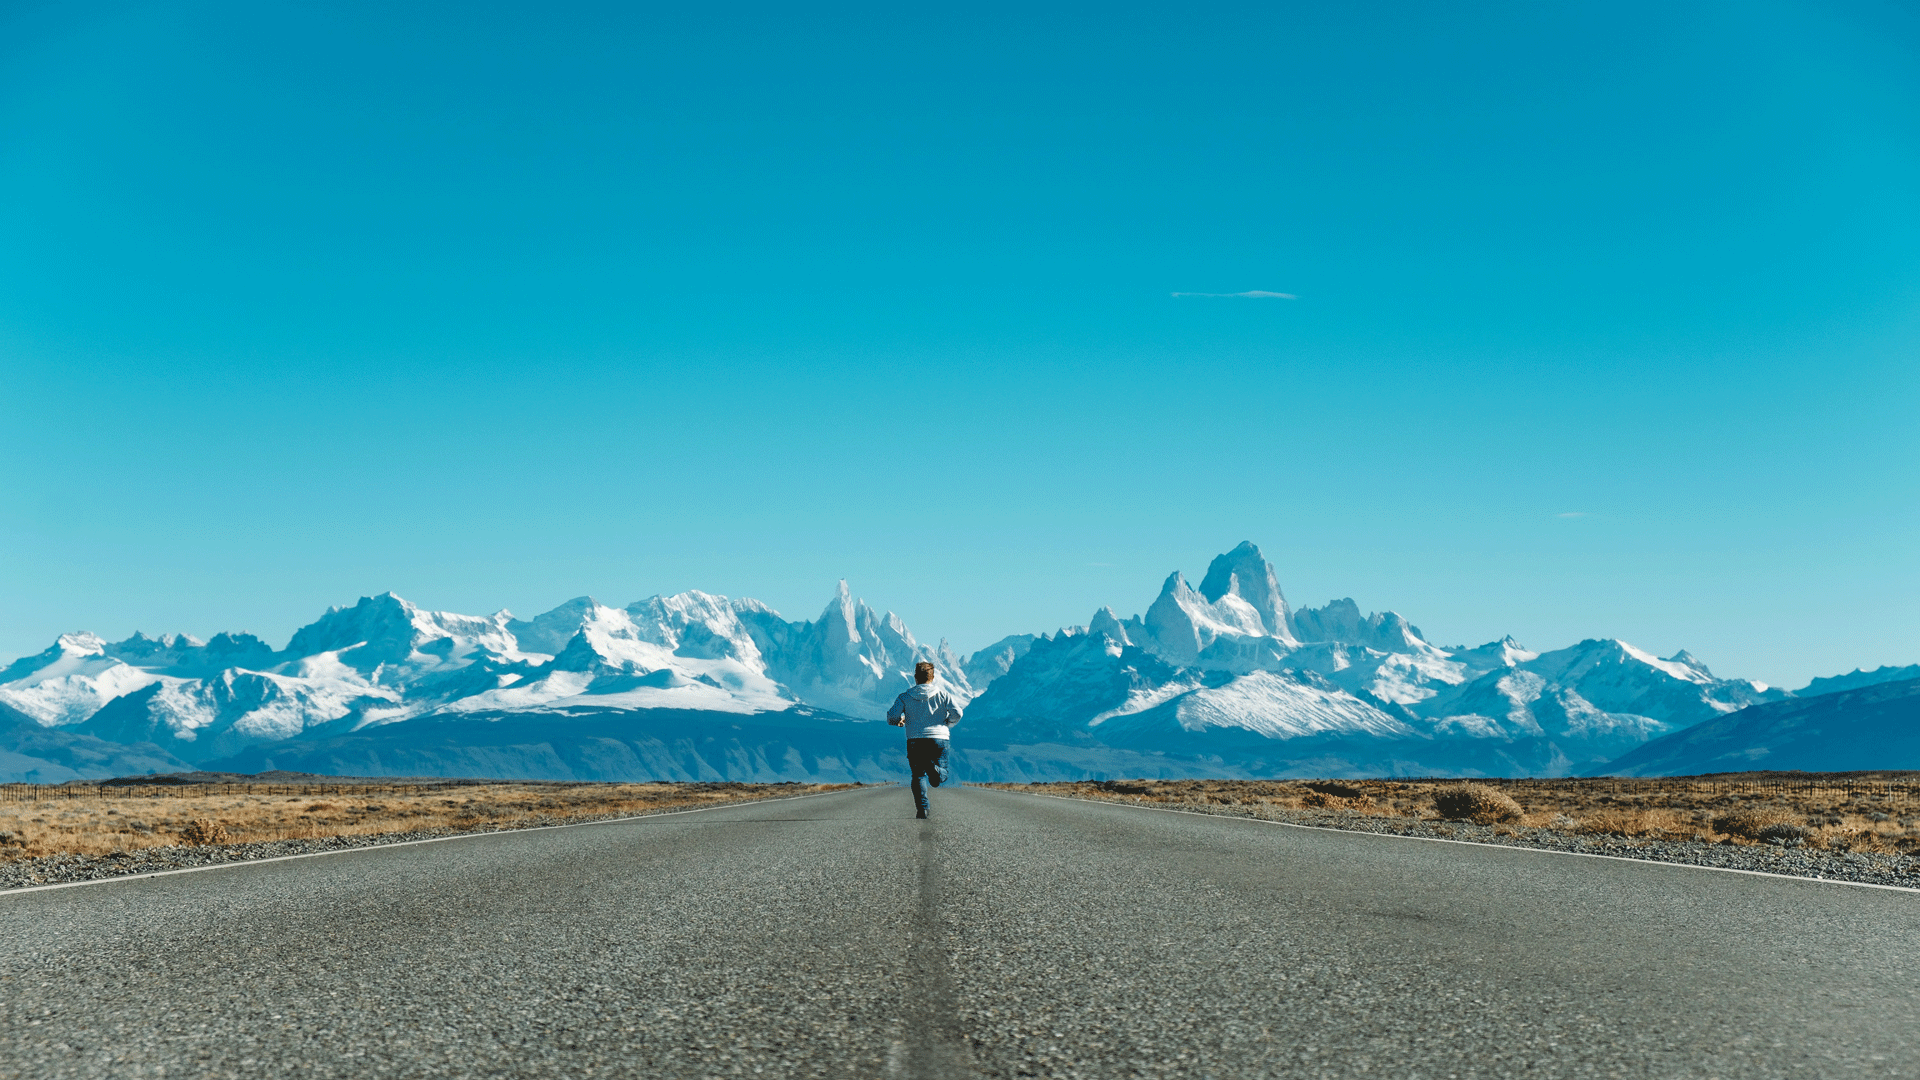 viaggio in argentina patagonia